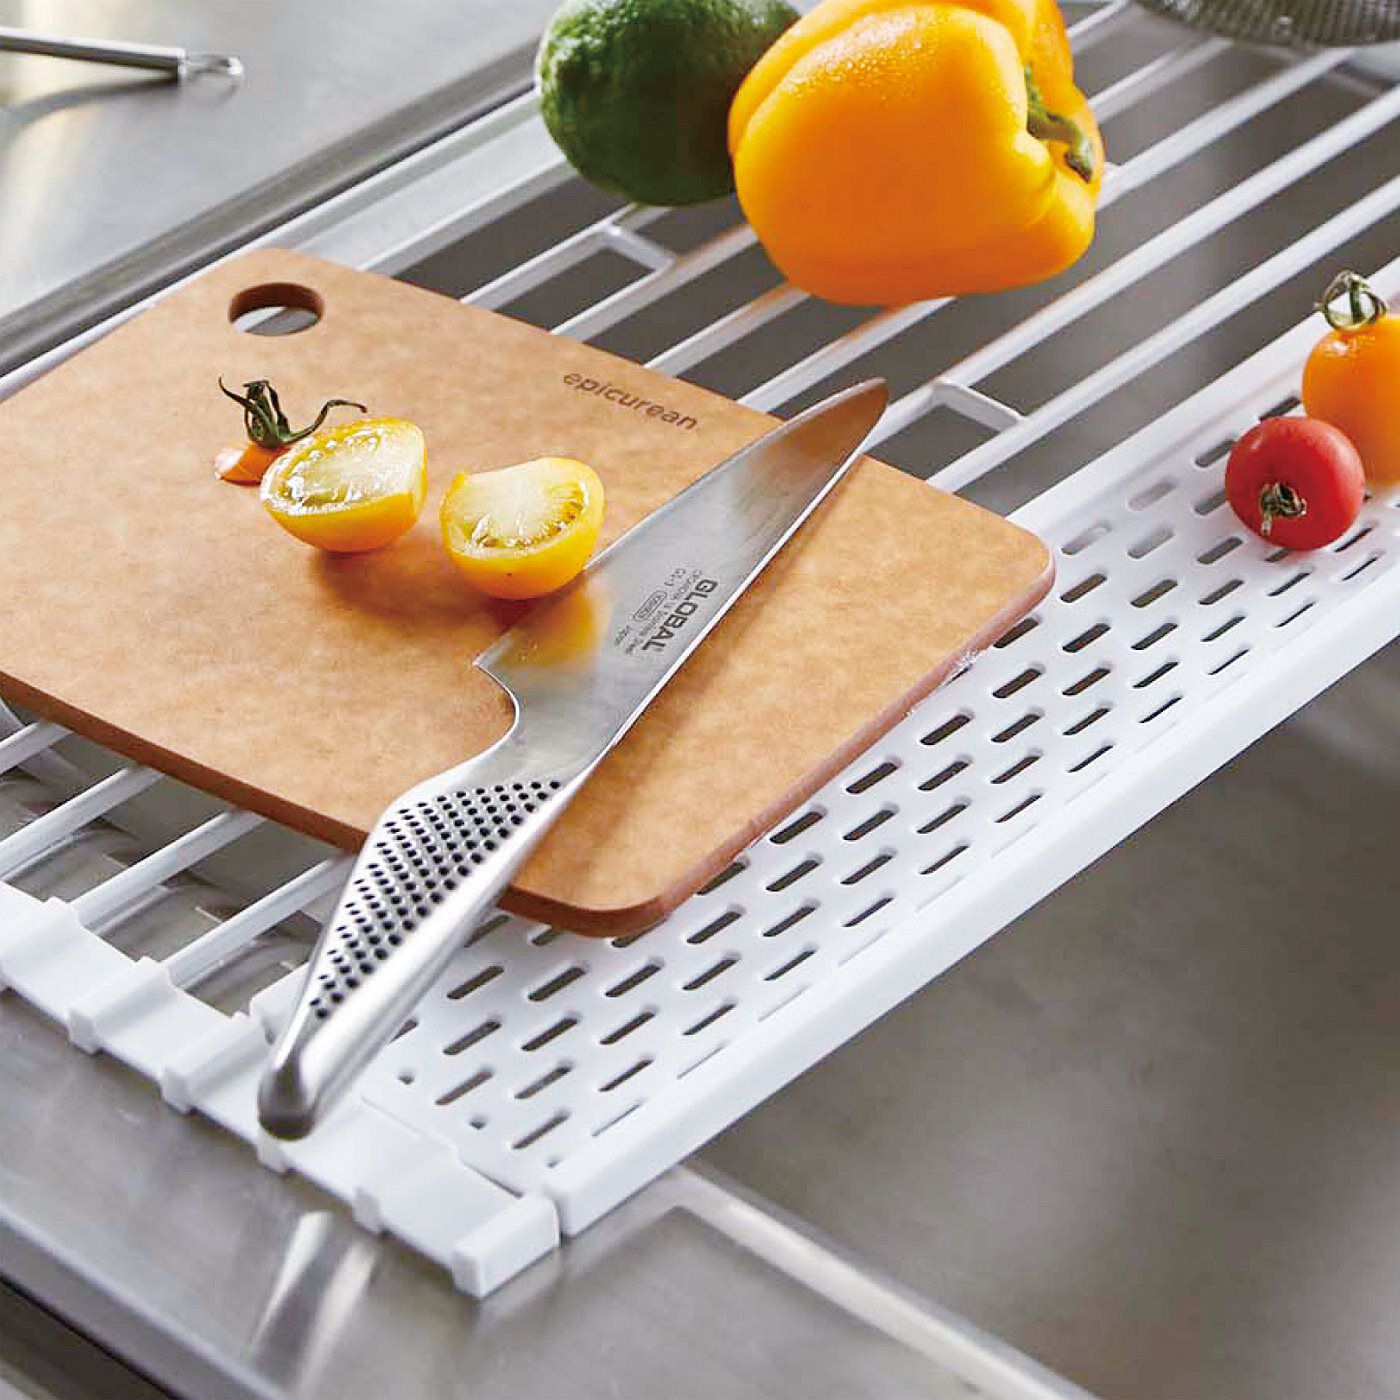 フェリシモの雑貨 Kraso|クルッと巻いてスタンバイOK　小物も乾かせるトレイ付き水きりラック|調理台の延長としてまな板も置けます。